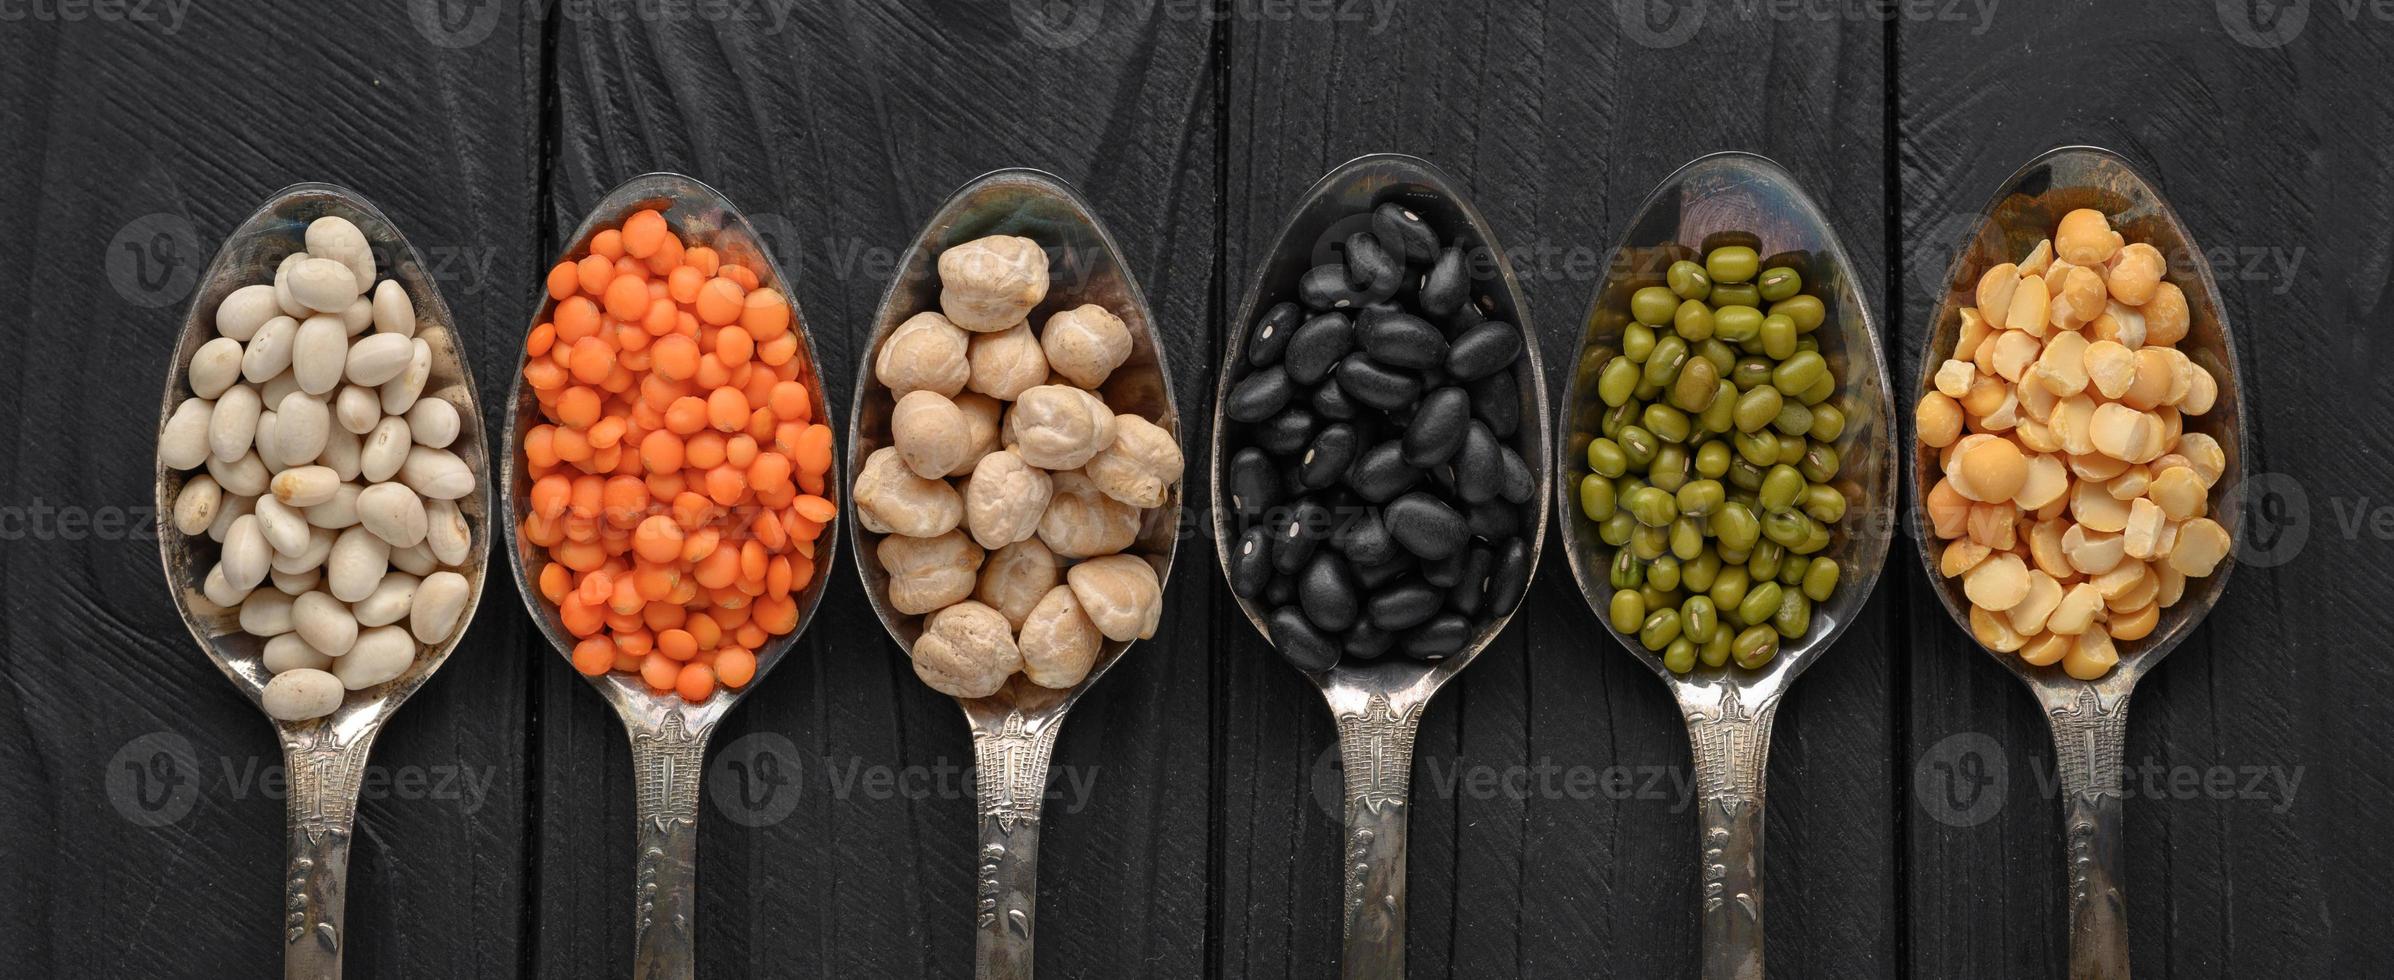 variedade de legumes em colheres de prata velhas em um fundo preto de madeira. foto